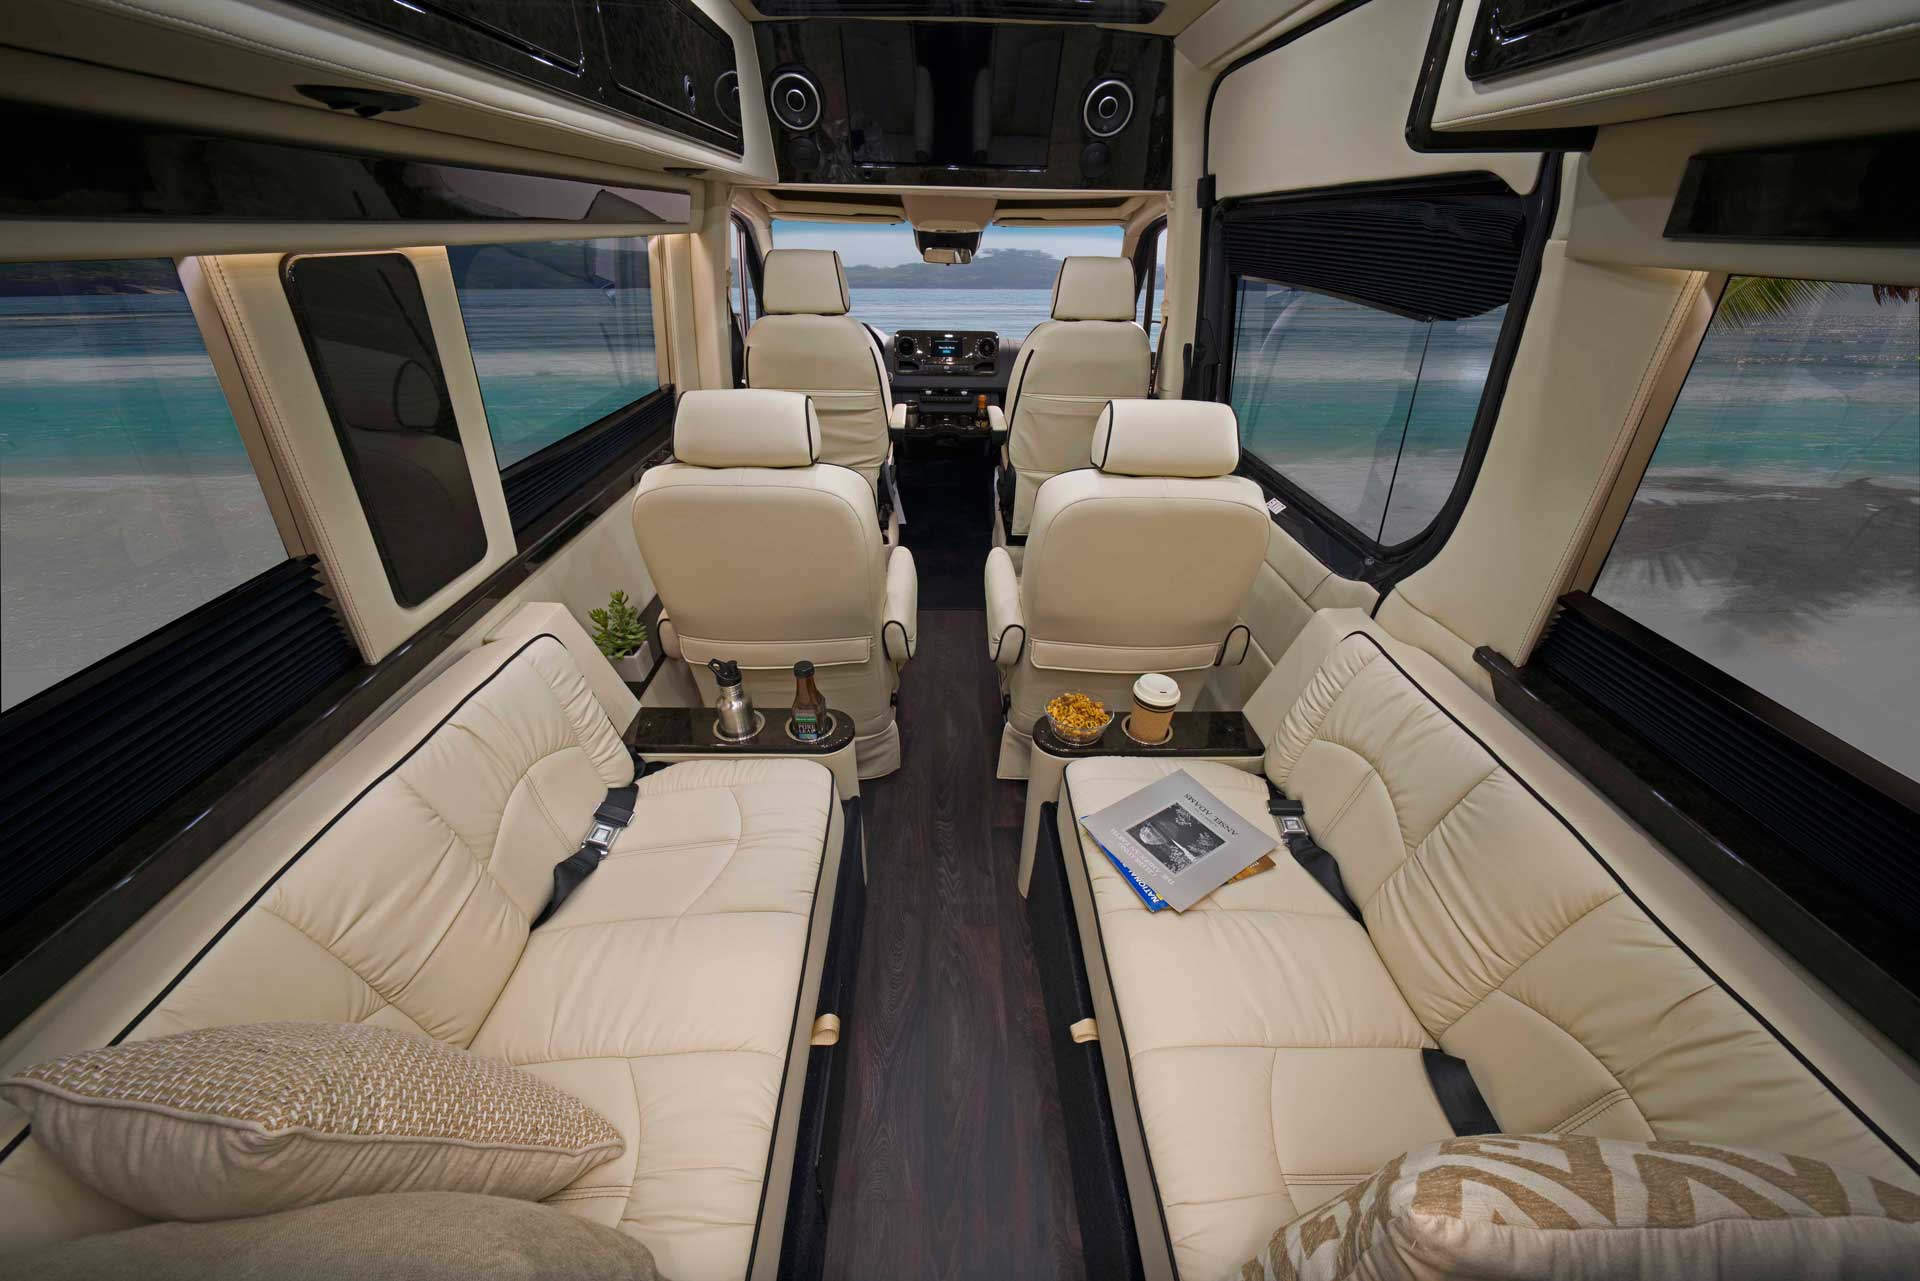 luxury cargo van